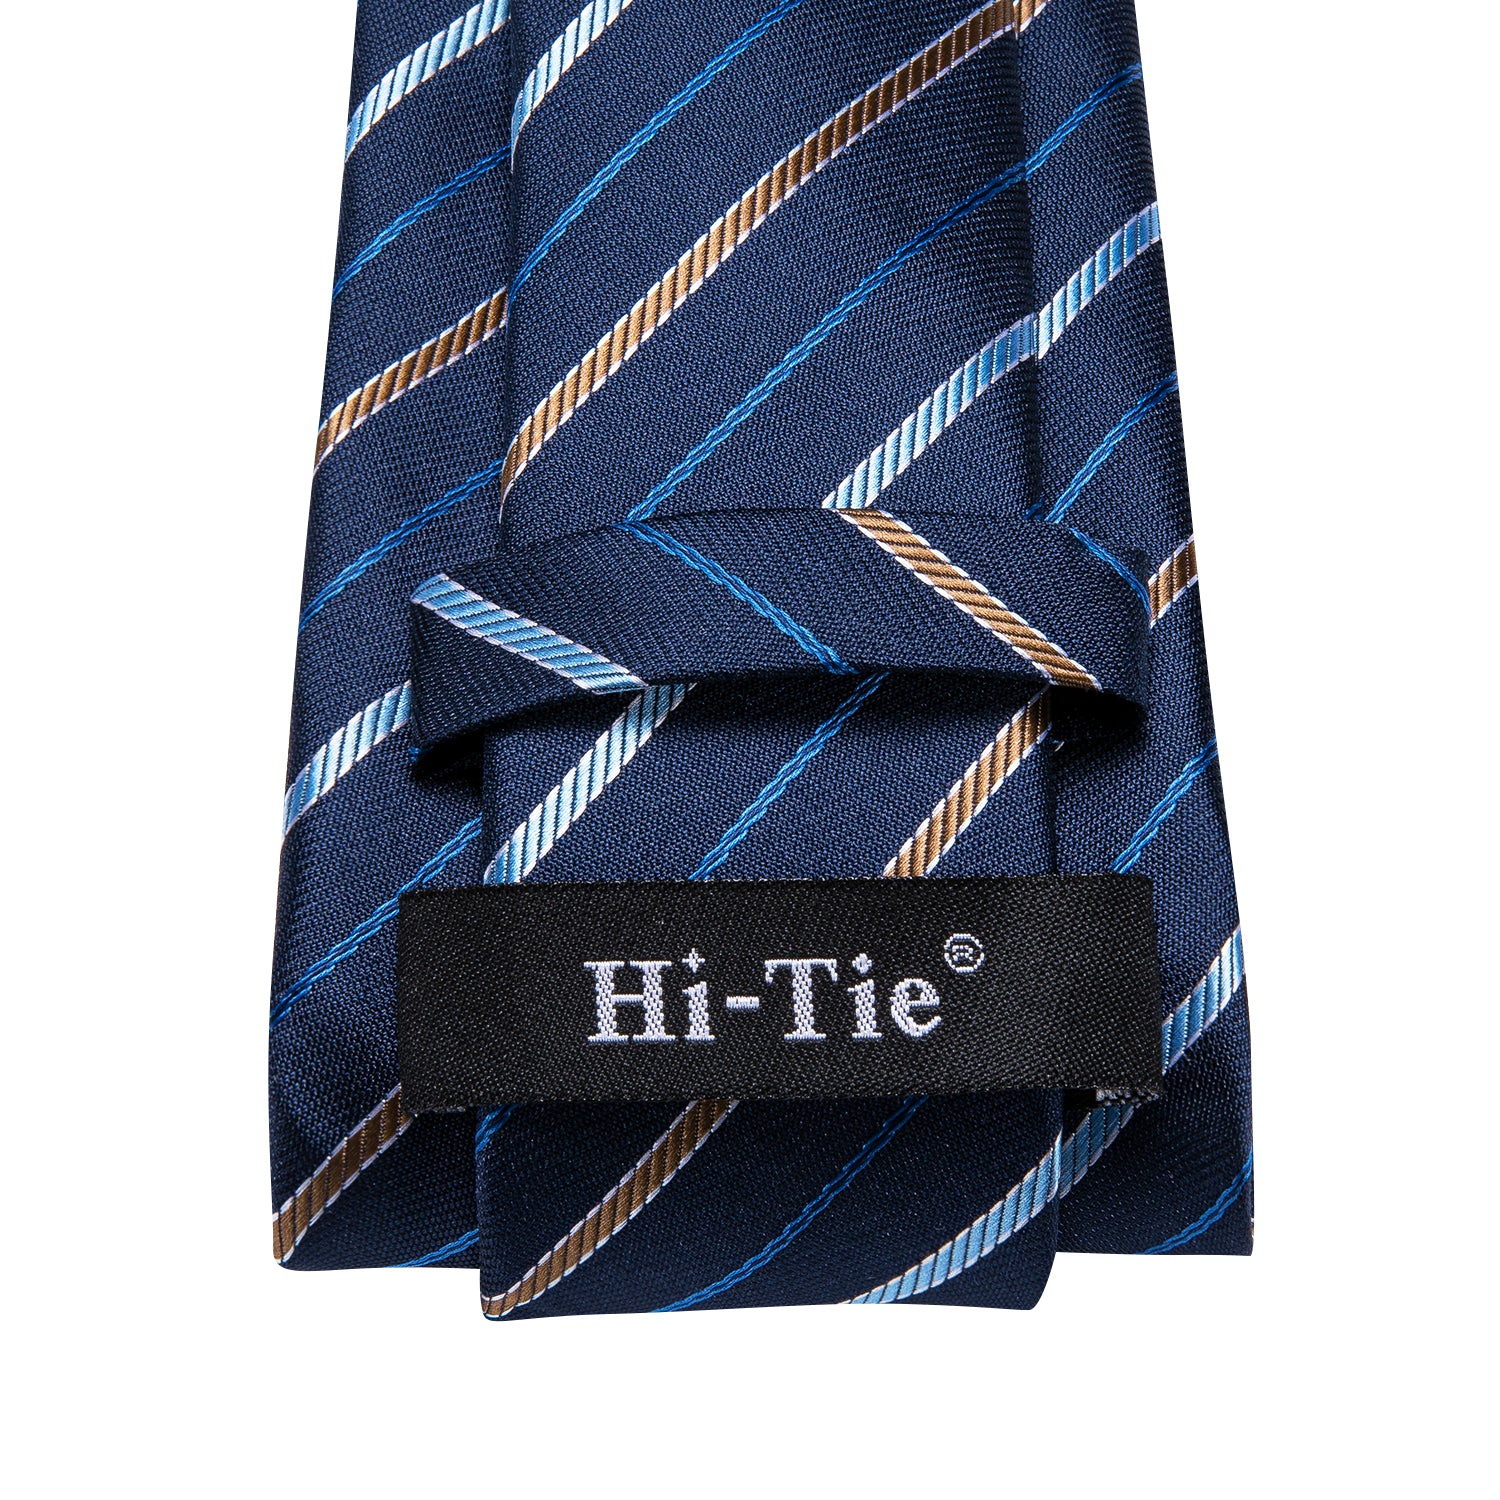 Hi-Tie Blue Thin Striped Men's Tie Pocket Square Cufflinks Set